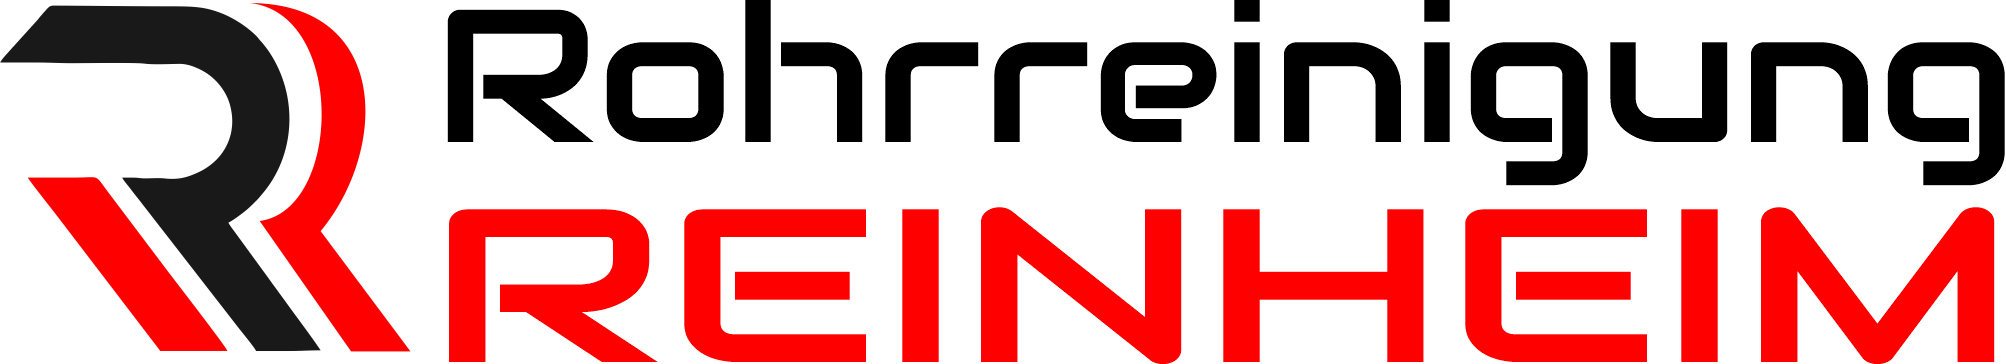 Rohrreinigung Reinheim Logo